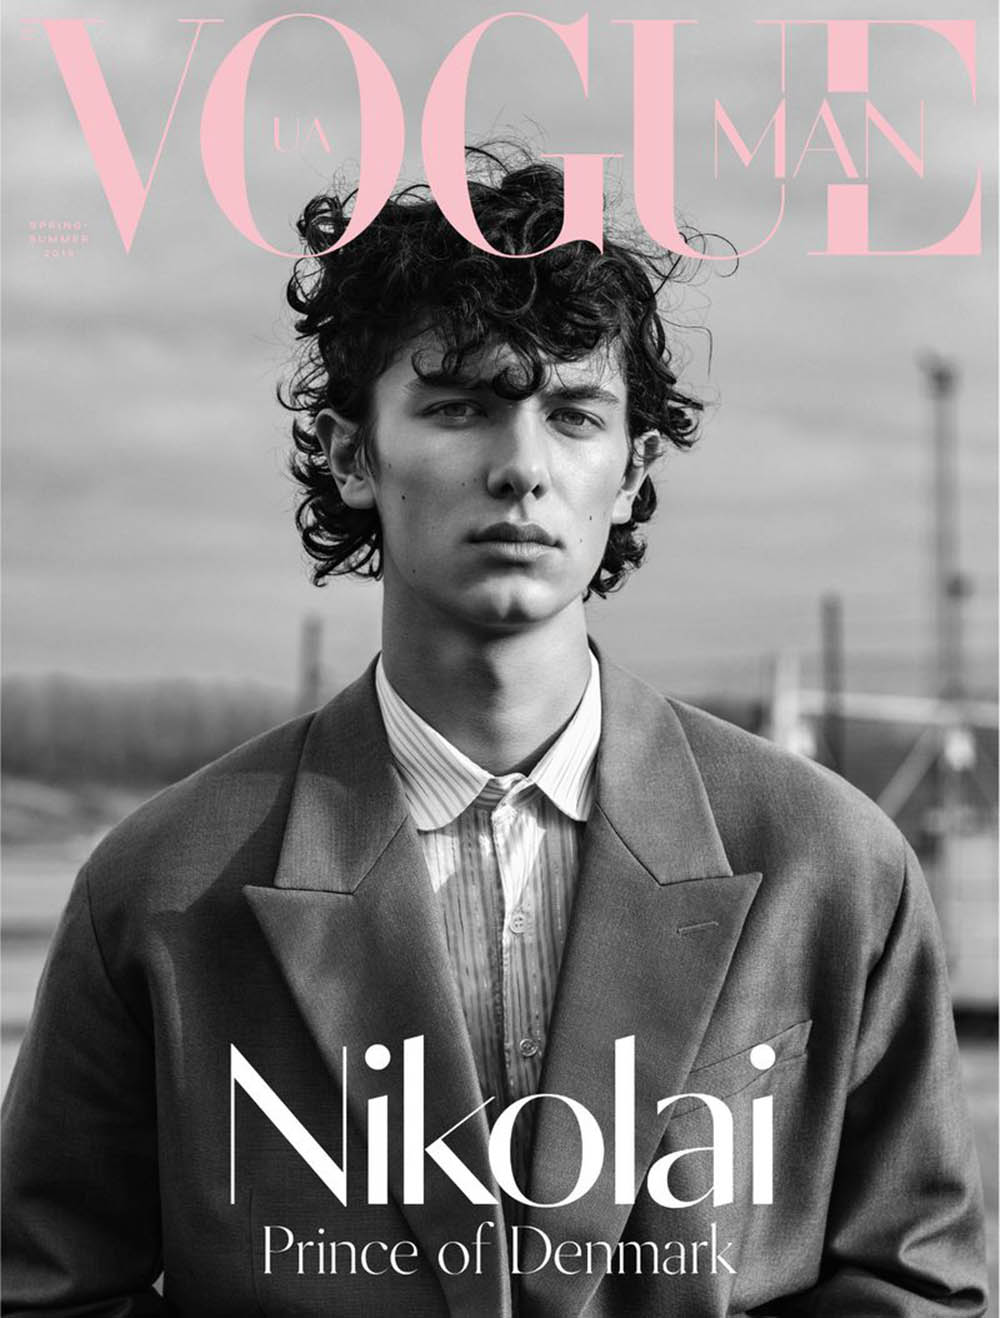 Prince-Nikolai-of-Denmark-covers-Vogue-M